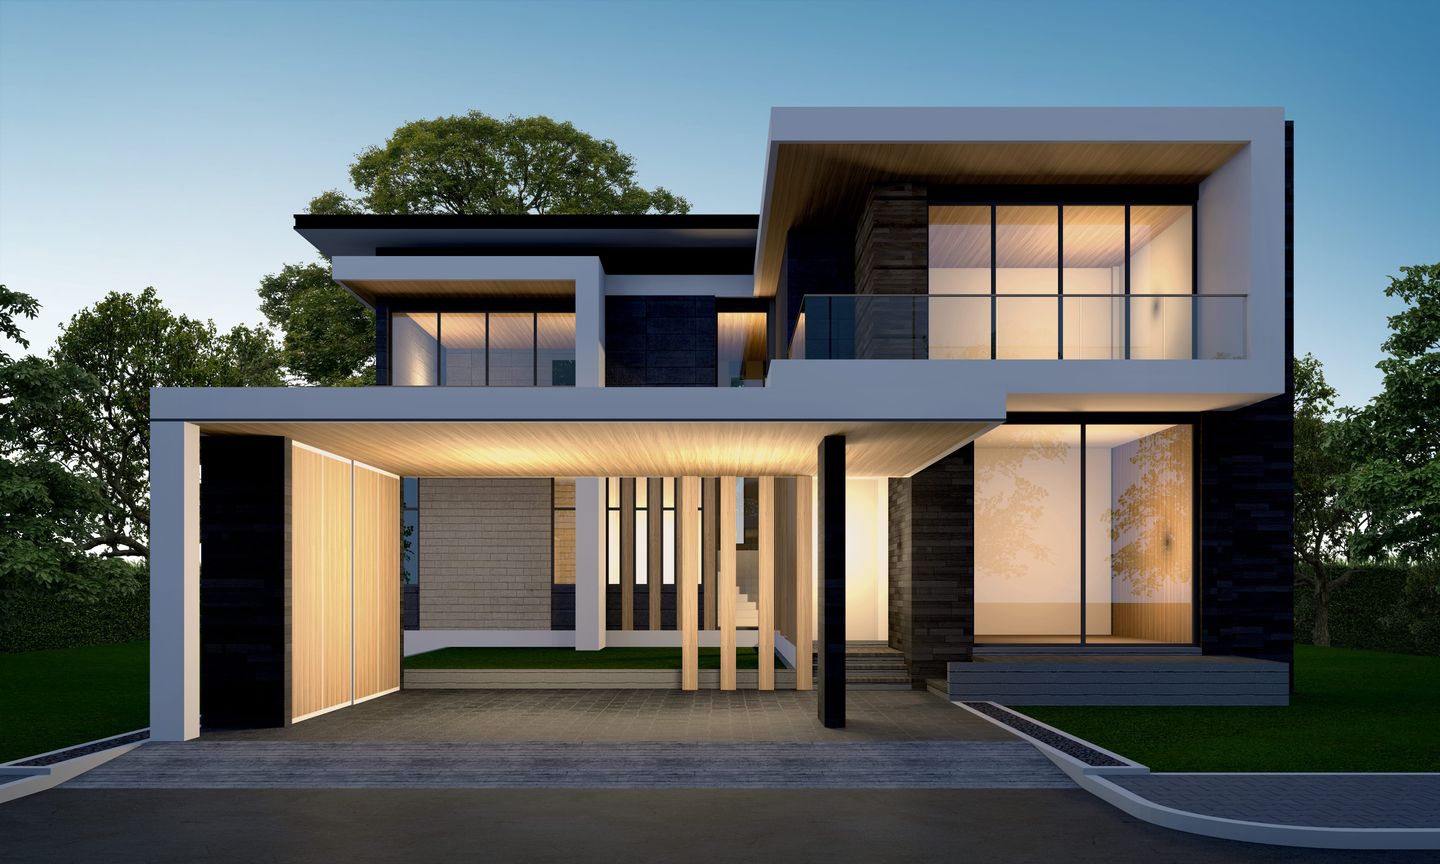 Desain rumah ukuran 6 x 8 bisa dibuat 2 lantai agar lebih menarik.